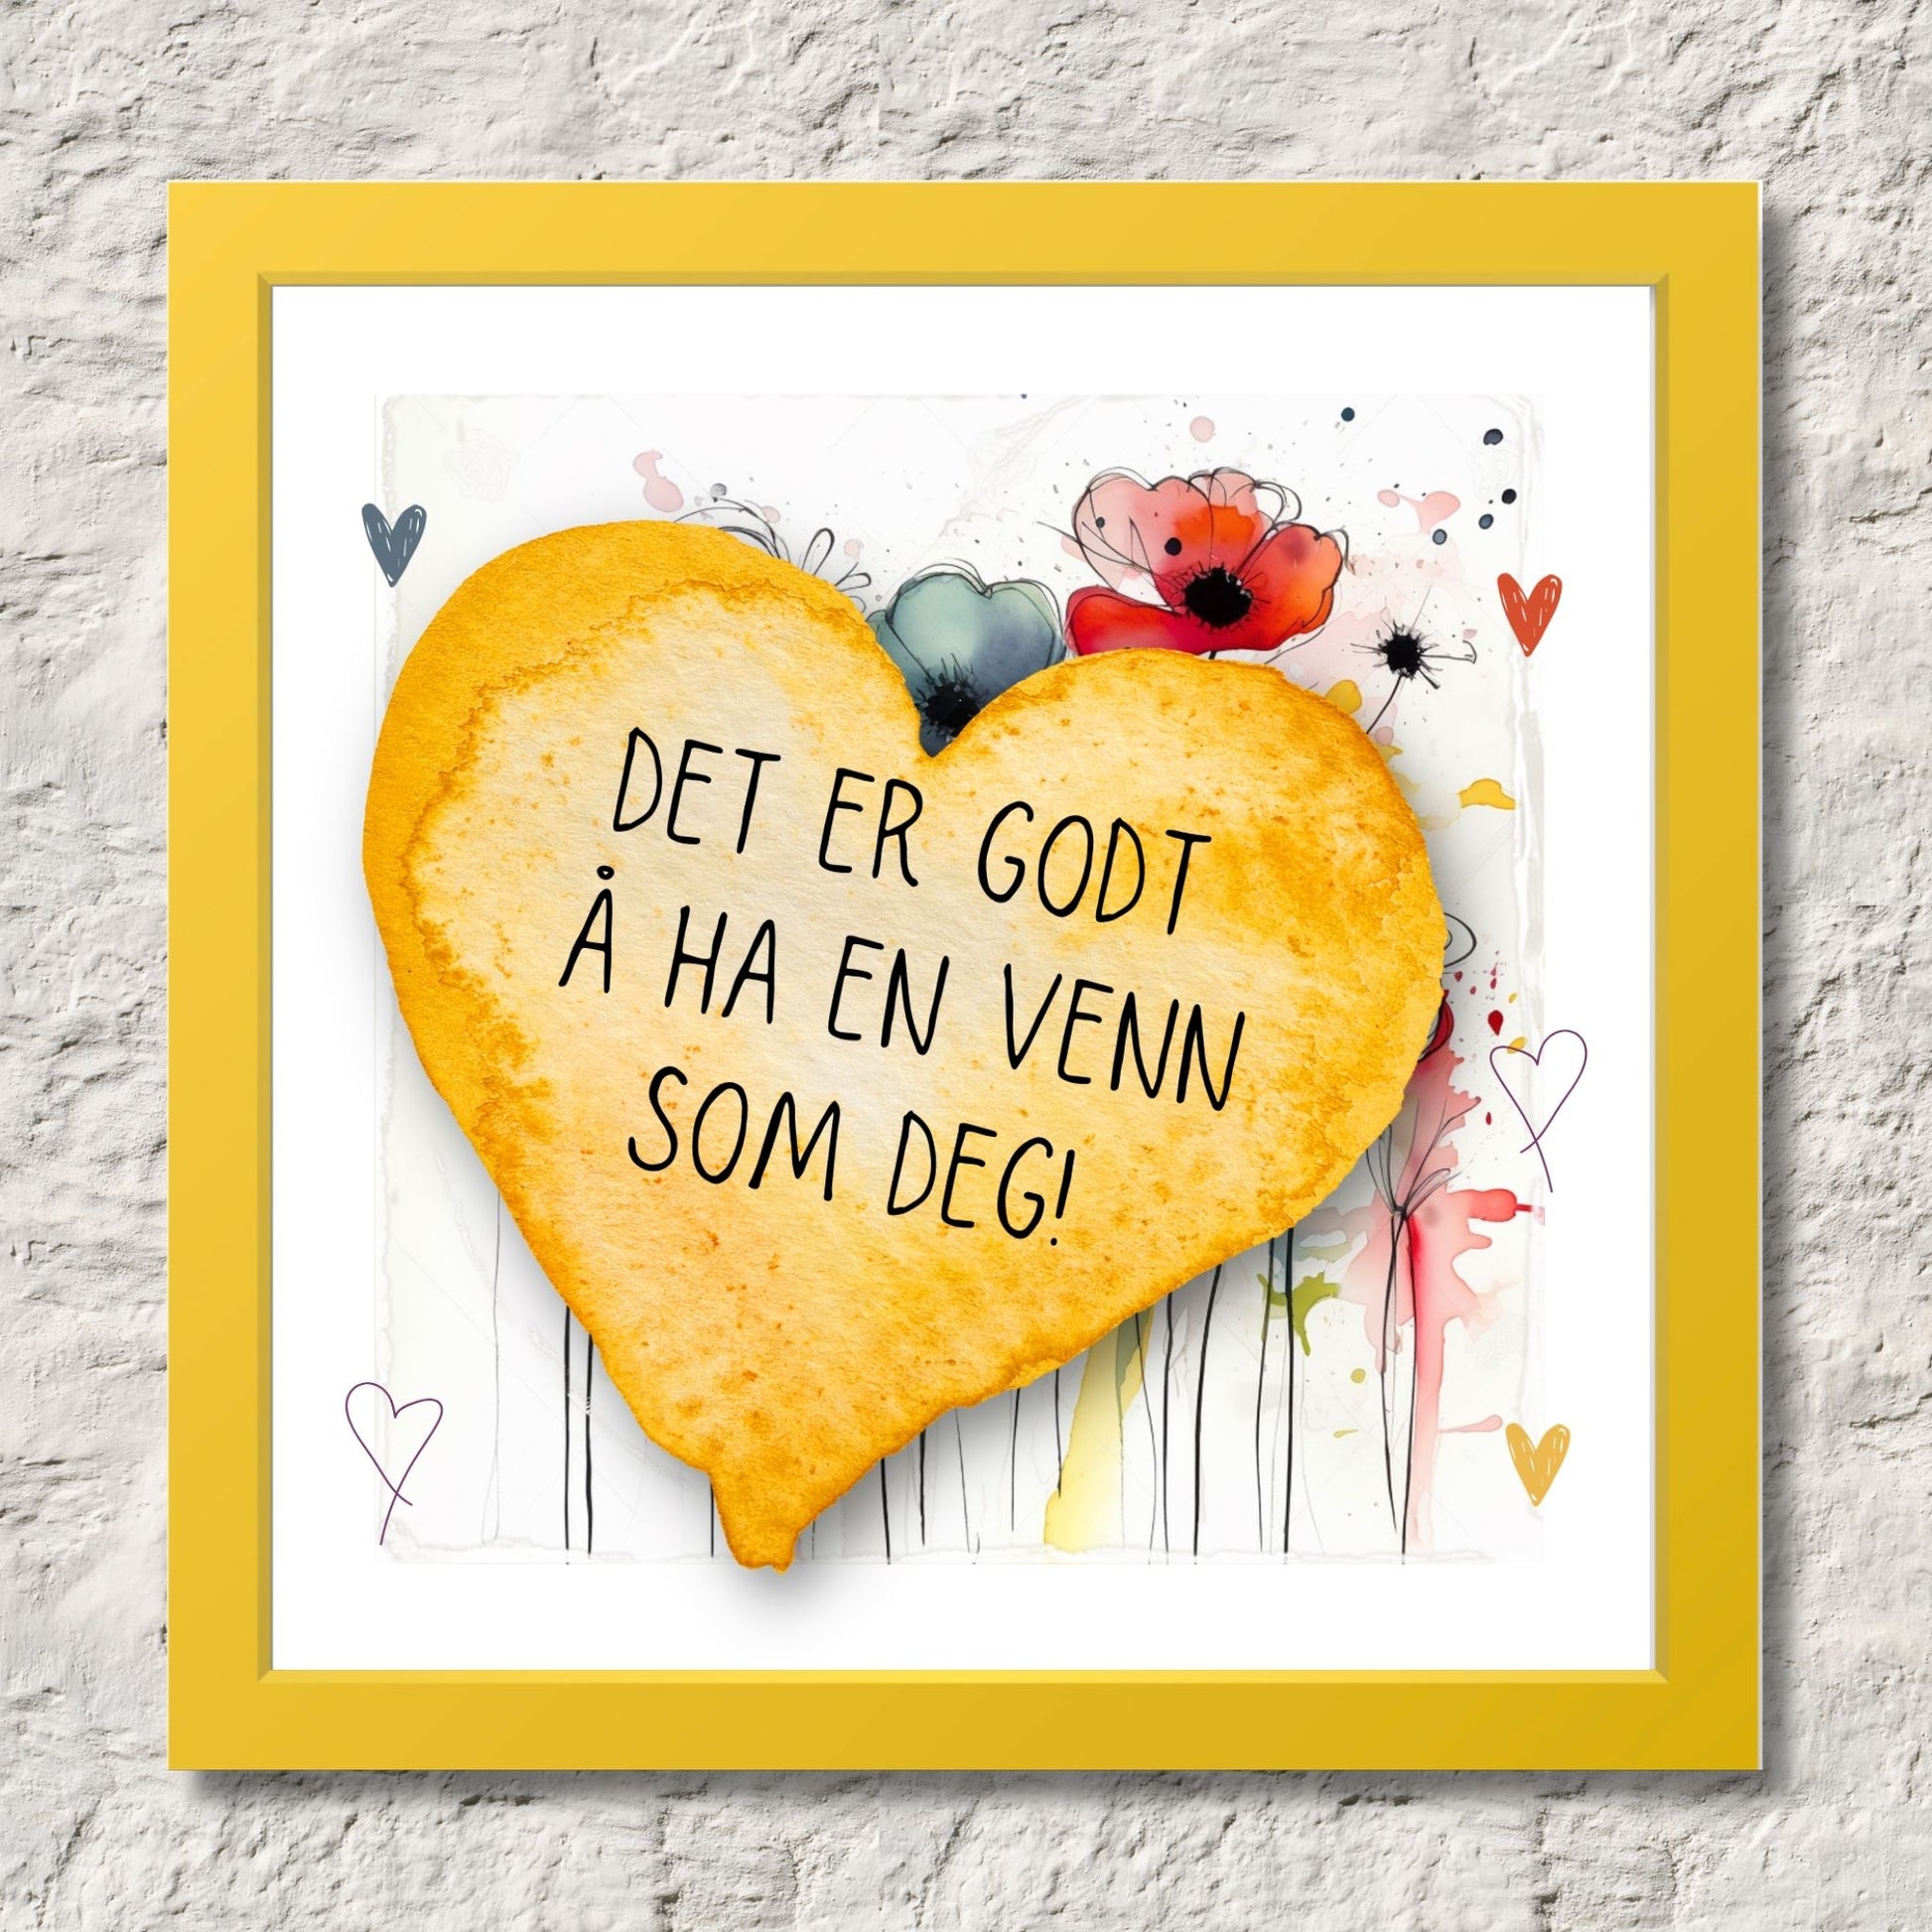 Plakat med lysegult hjerte og tekst "Det er godt å ha en venn som deg" - og et motiv med blomster i gul, rød, hvit, blå og oransje. Med hvit kant på 1,5 cm. Illustrasjon viser plakat i gul ramme.